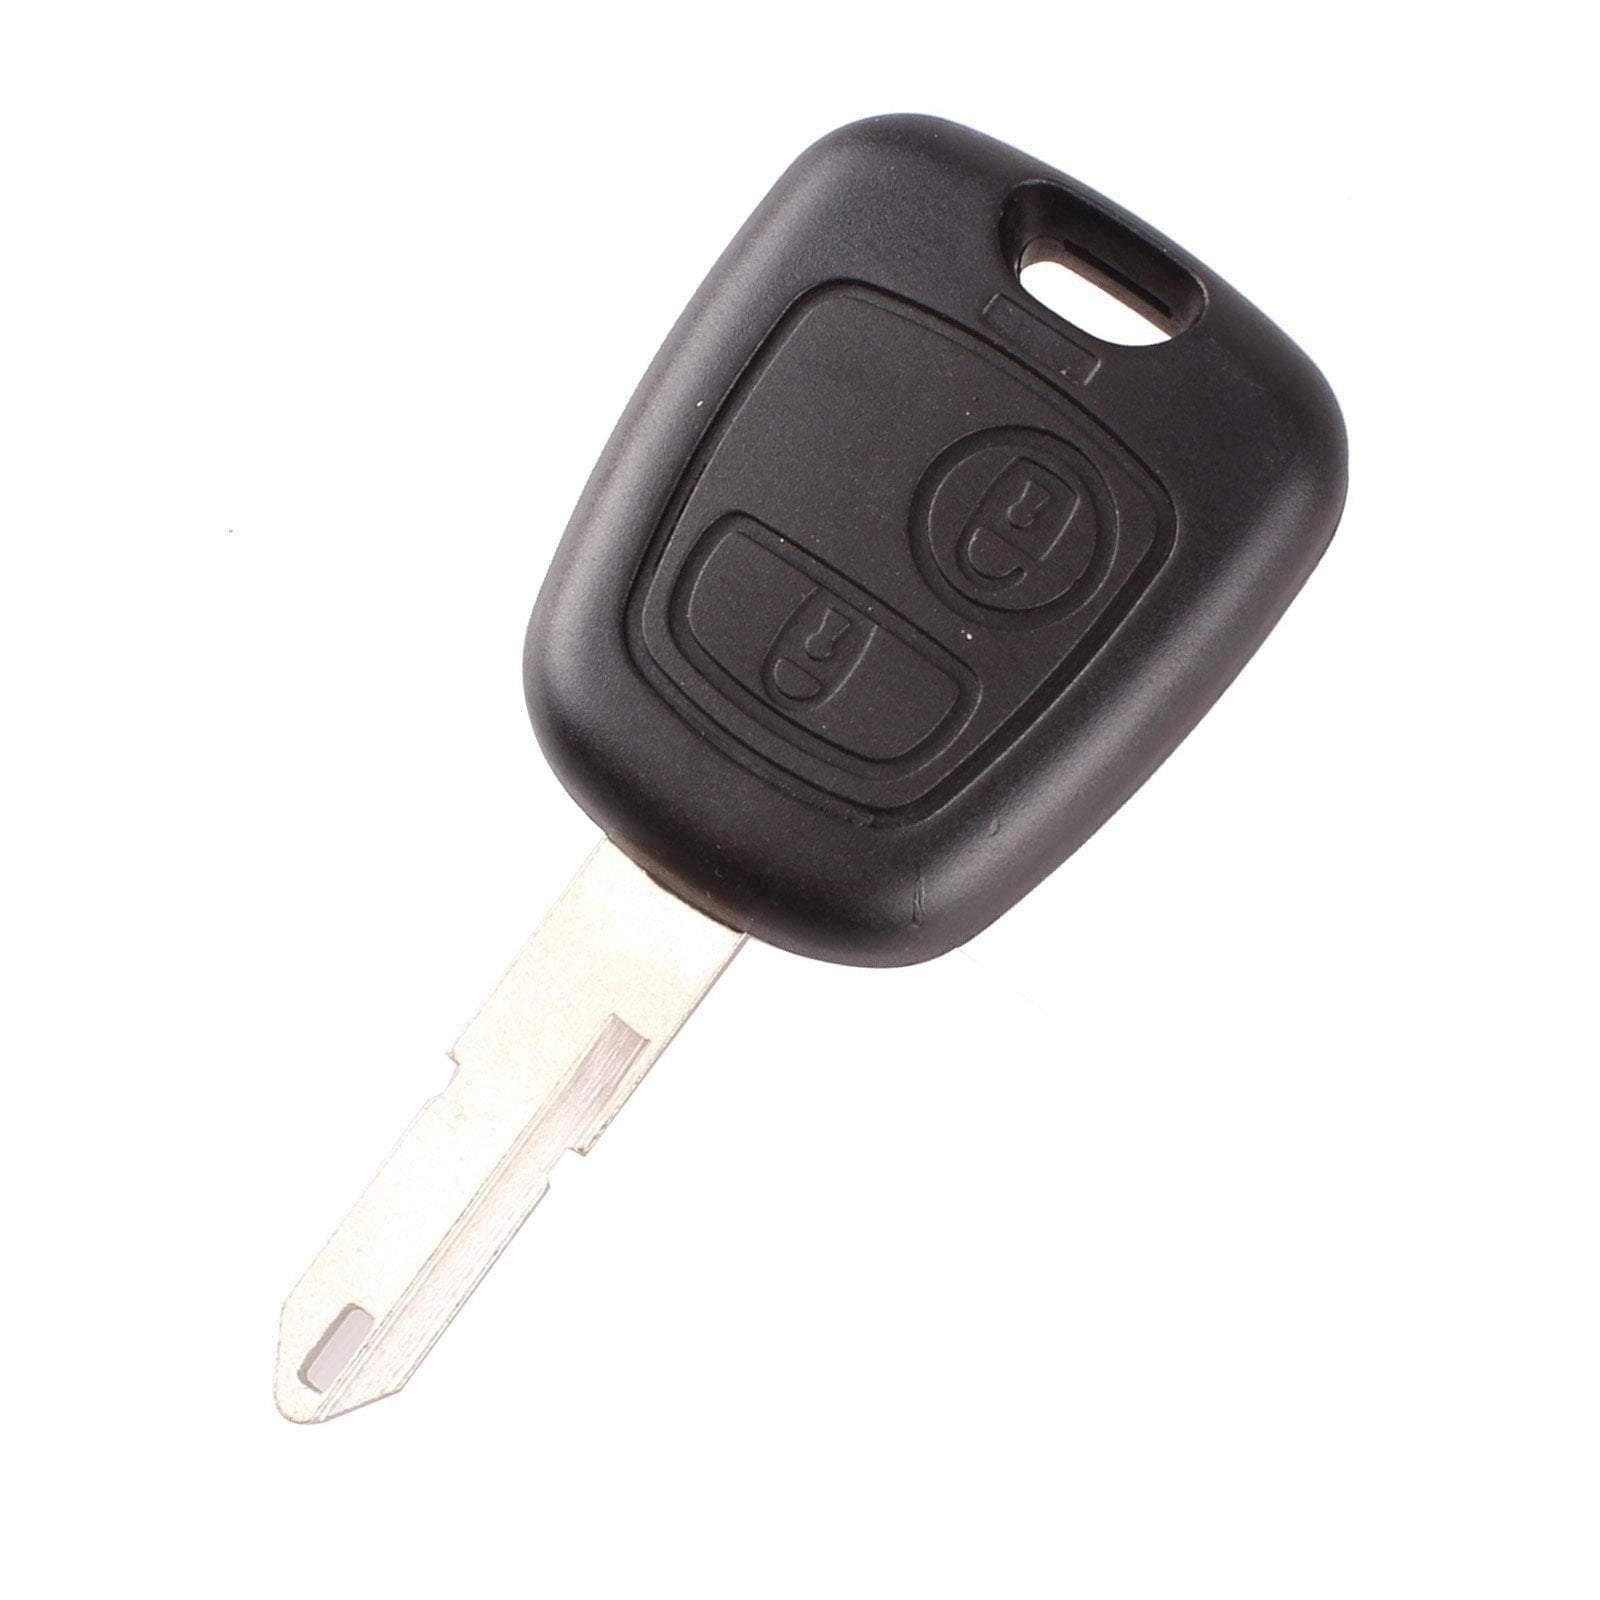 Fekete színű, 2 gombos Citroen kulcs, kulcsház VA3 kulcsszárral.